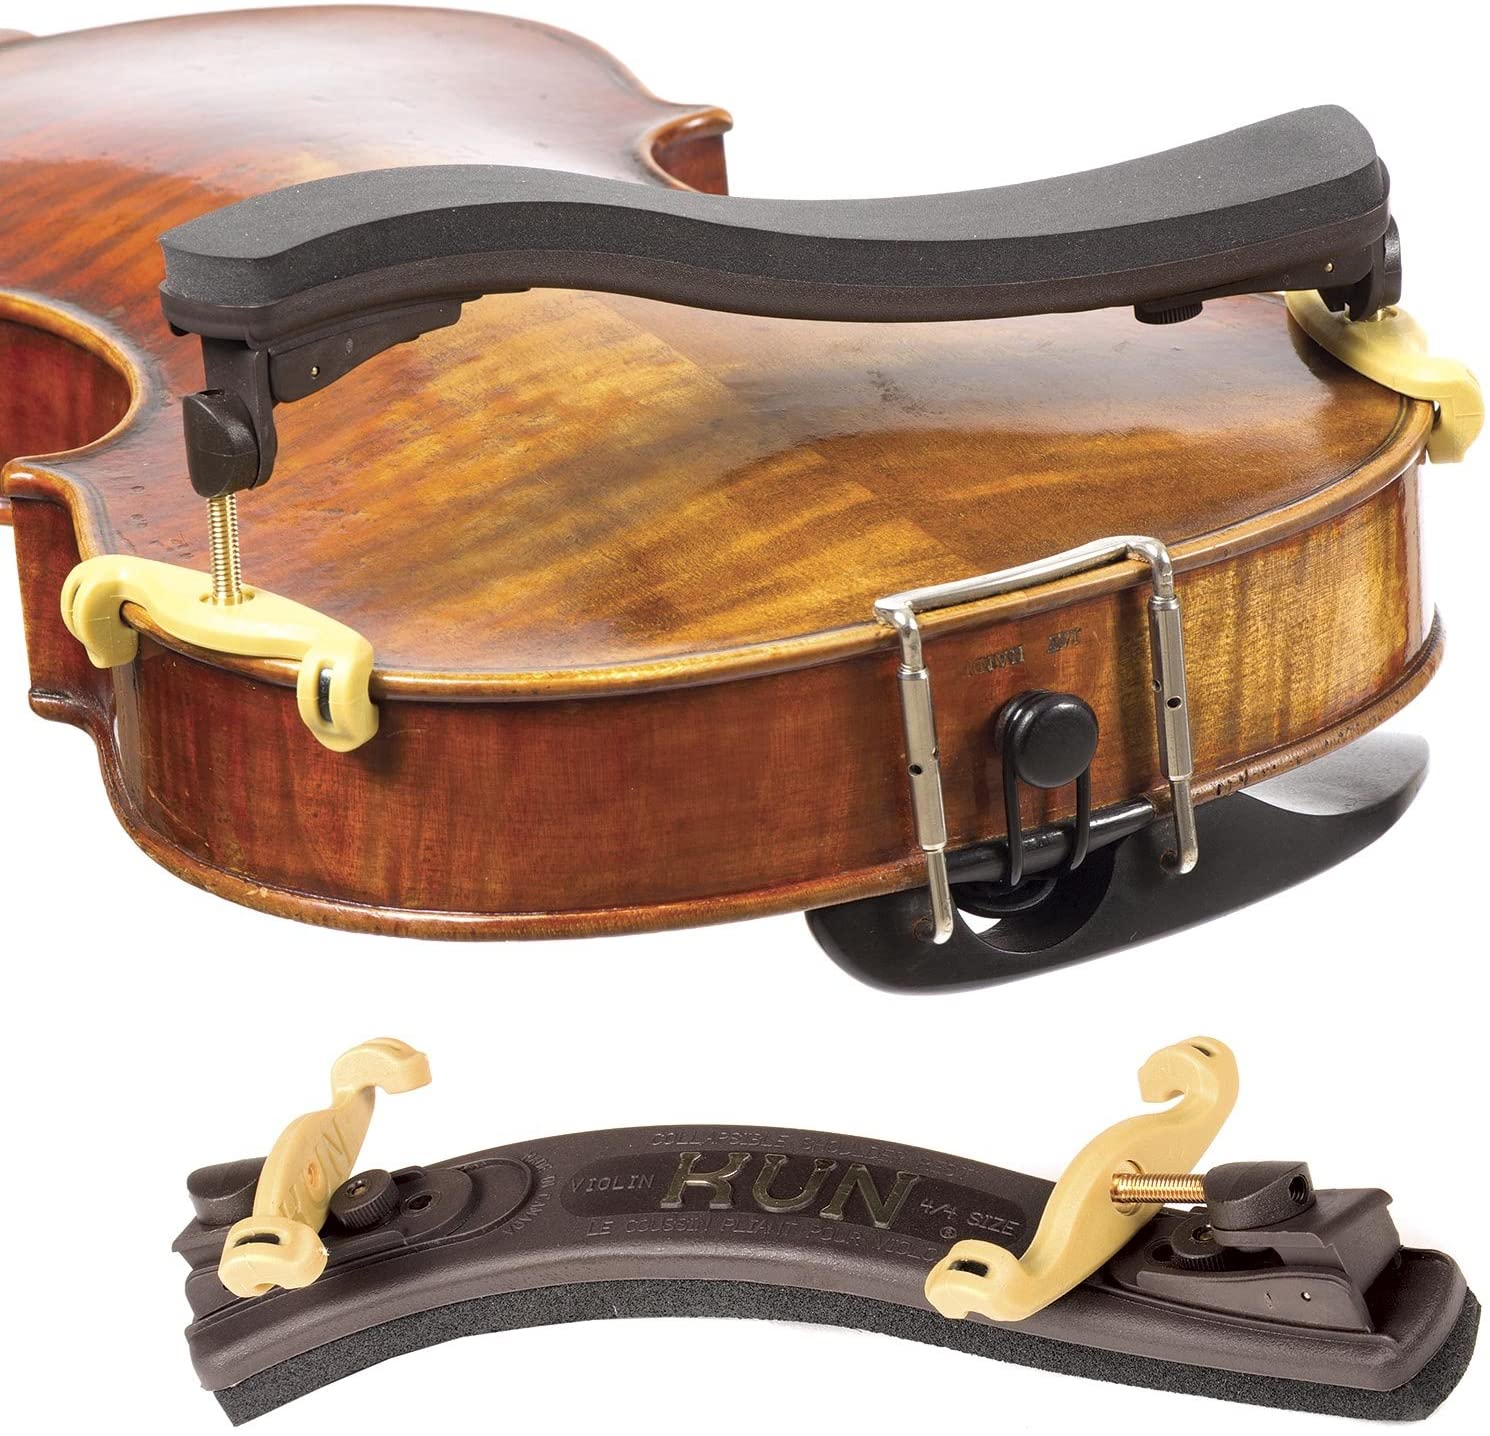 Quality Adjustable Violin Shoulder Rest Pad Designed For 1/2 2/4 Violin Size* 